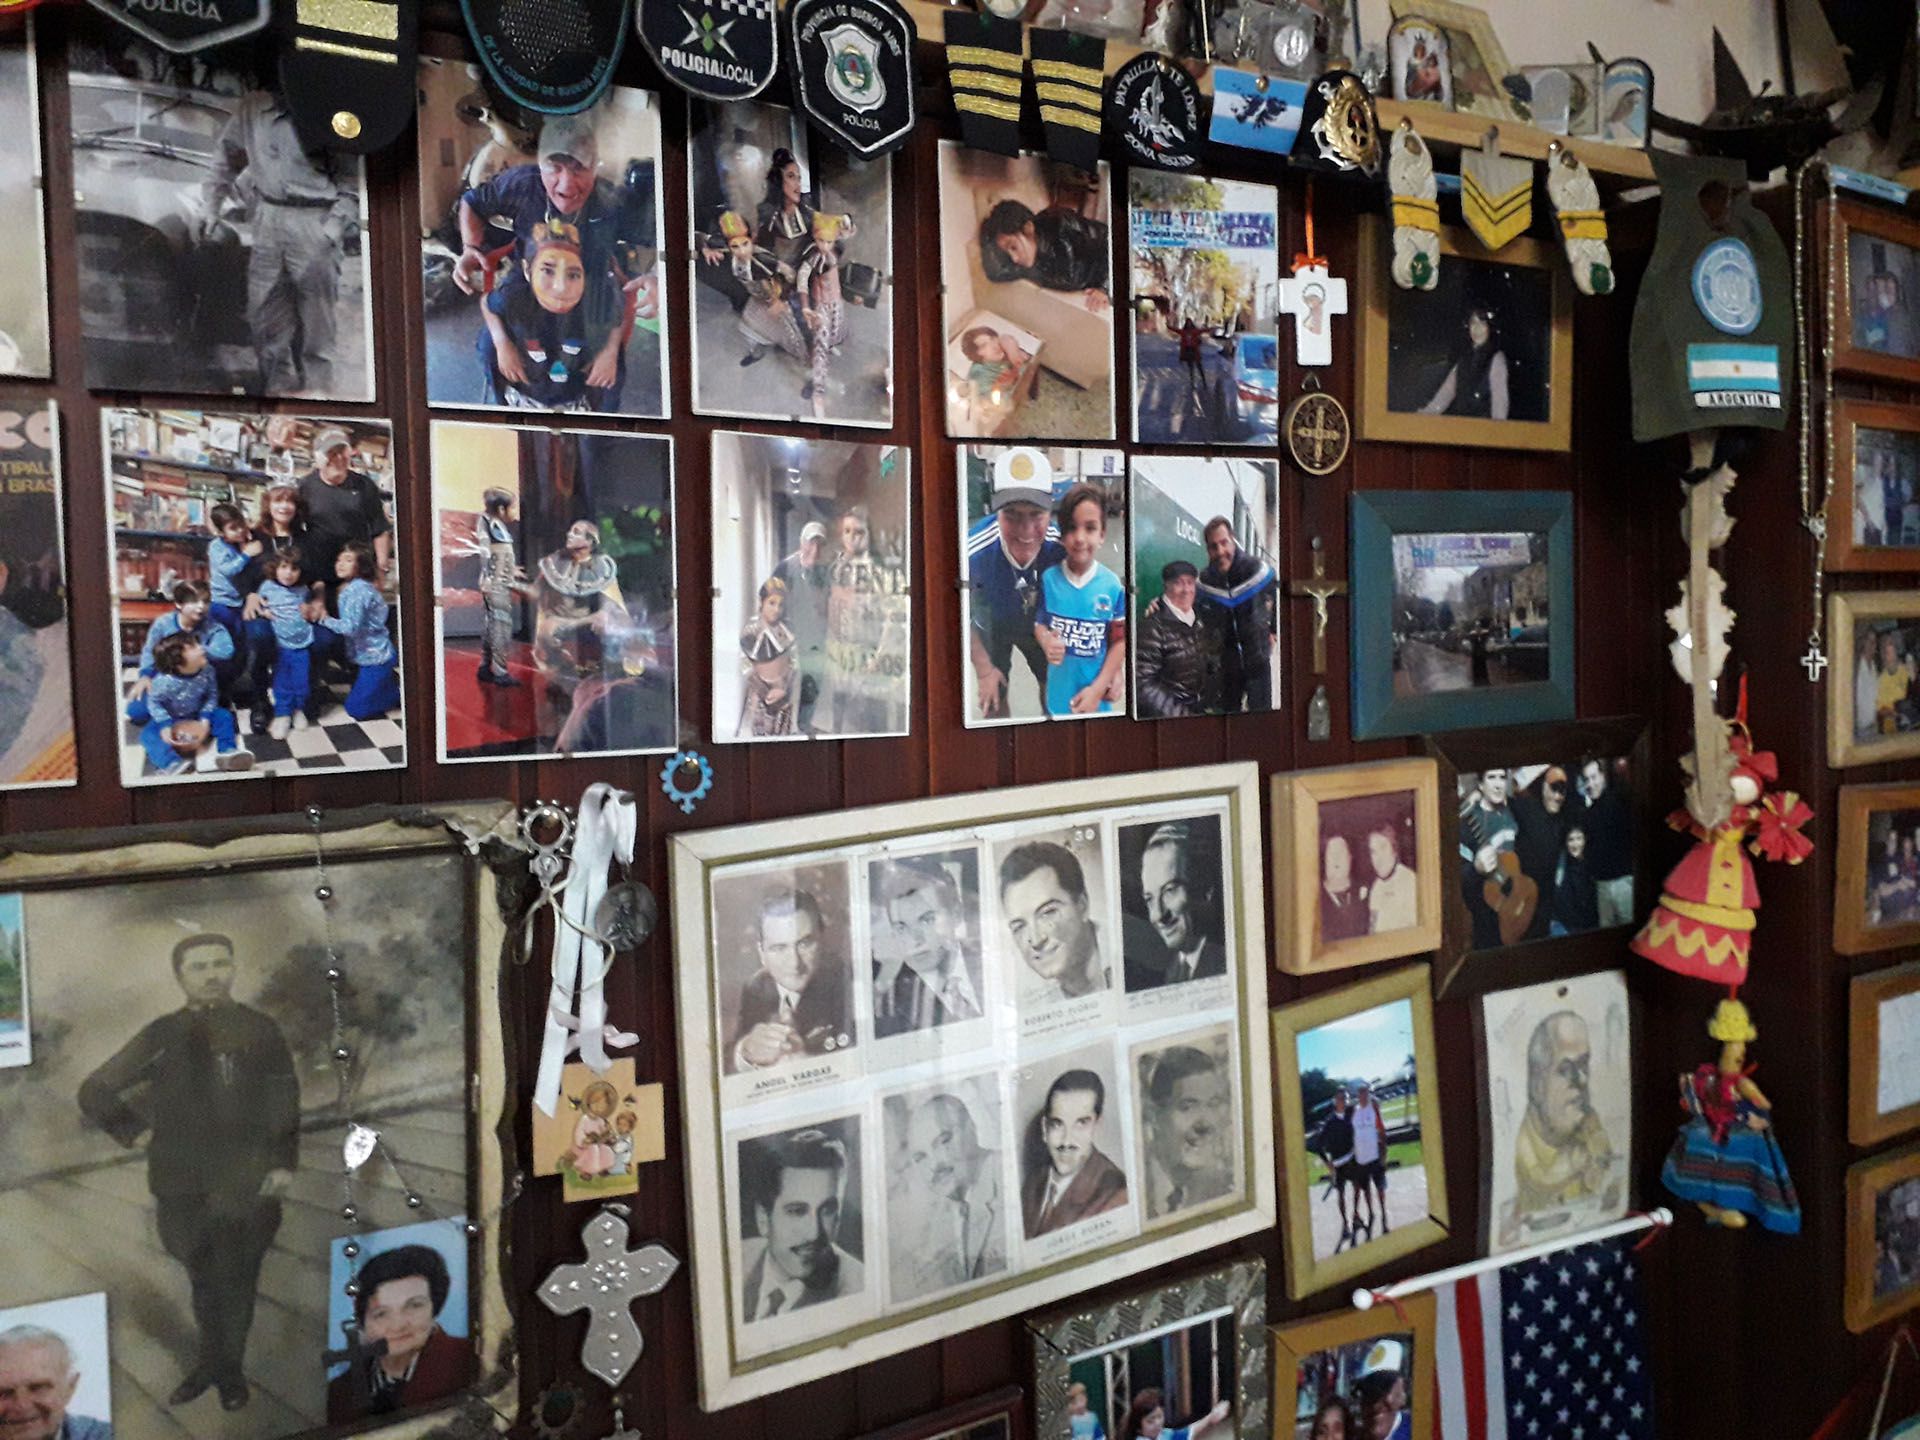 Decenas de fotos decoran la pizzería de Vicente López